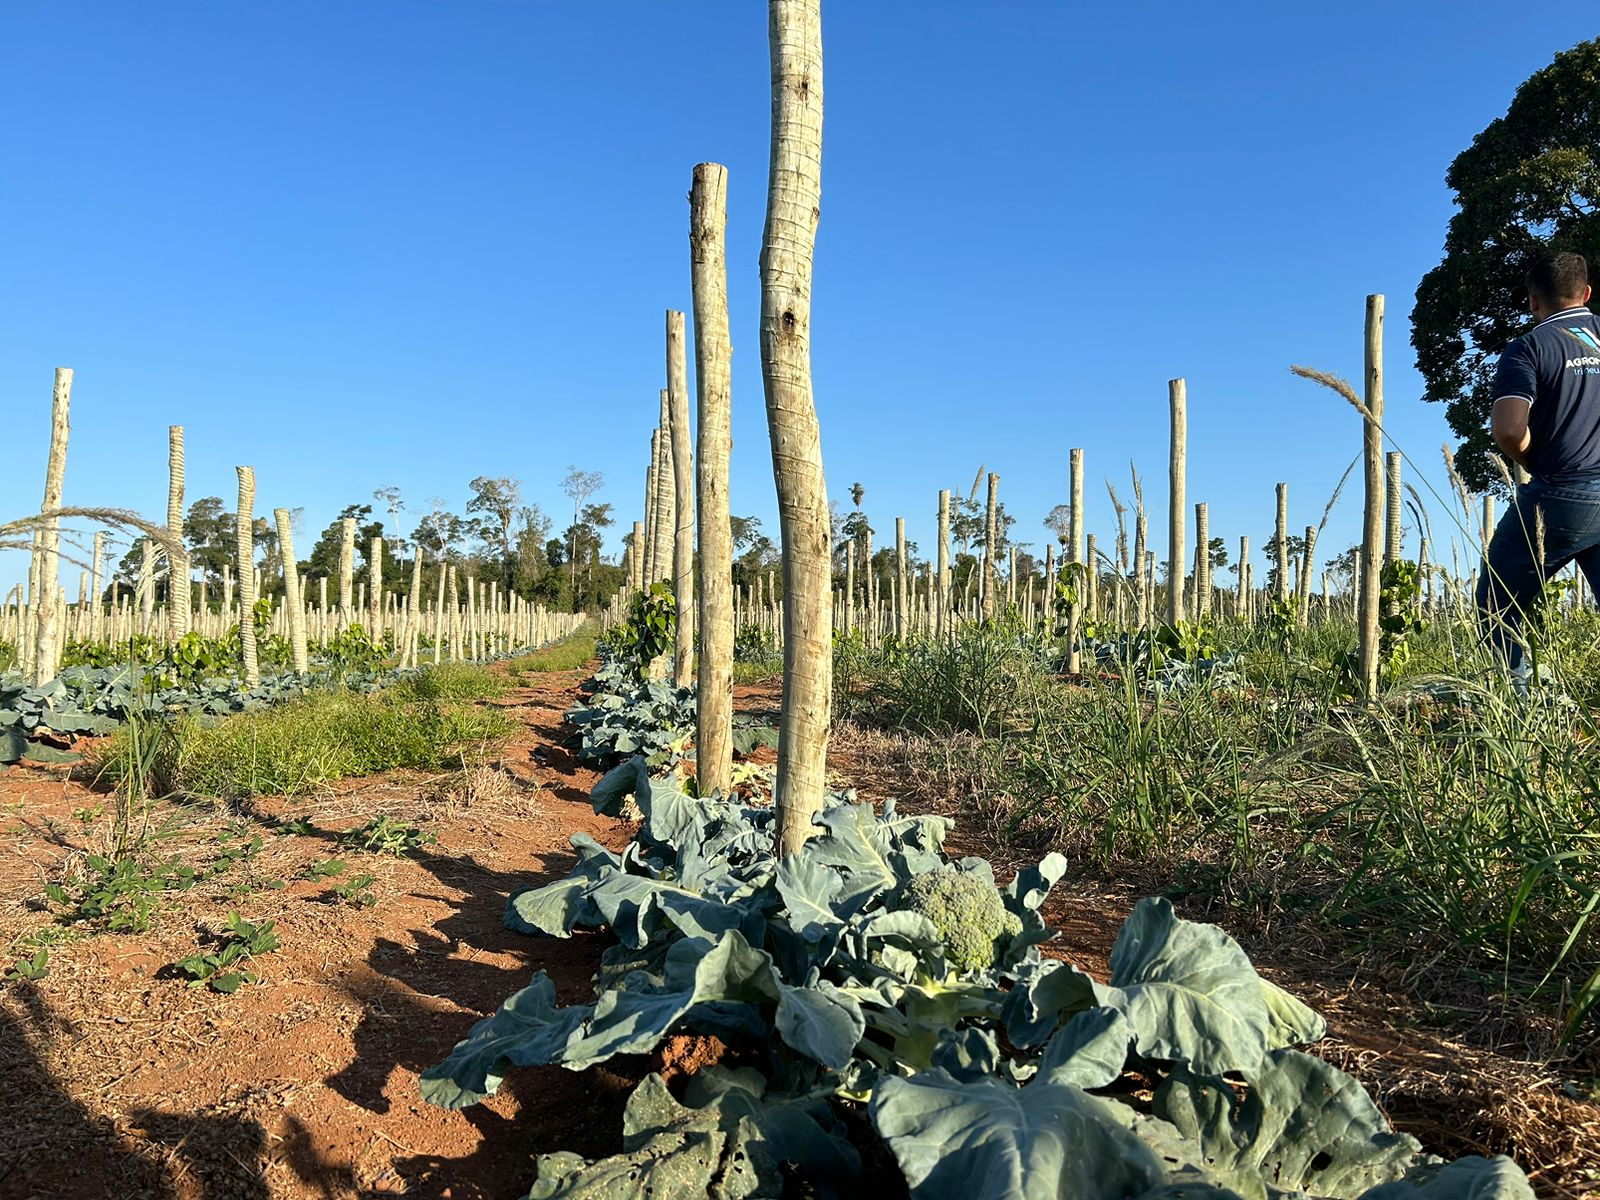 As duas mil mudas de brócolis japonês foram plantadas entre as estacas de madeira dos pés de pimenta, aproveitando o sistema de fertirrigação por gotejamento. Crédito: Júlia Pimentel